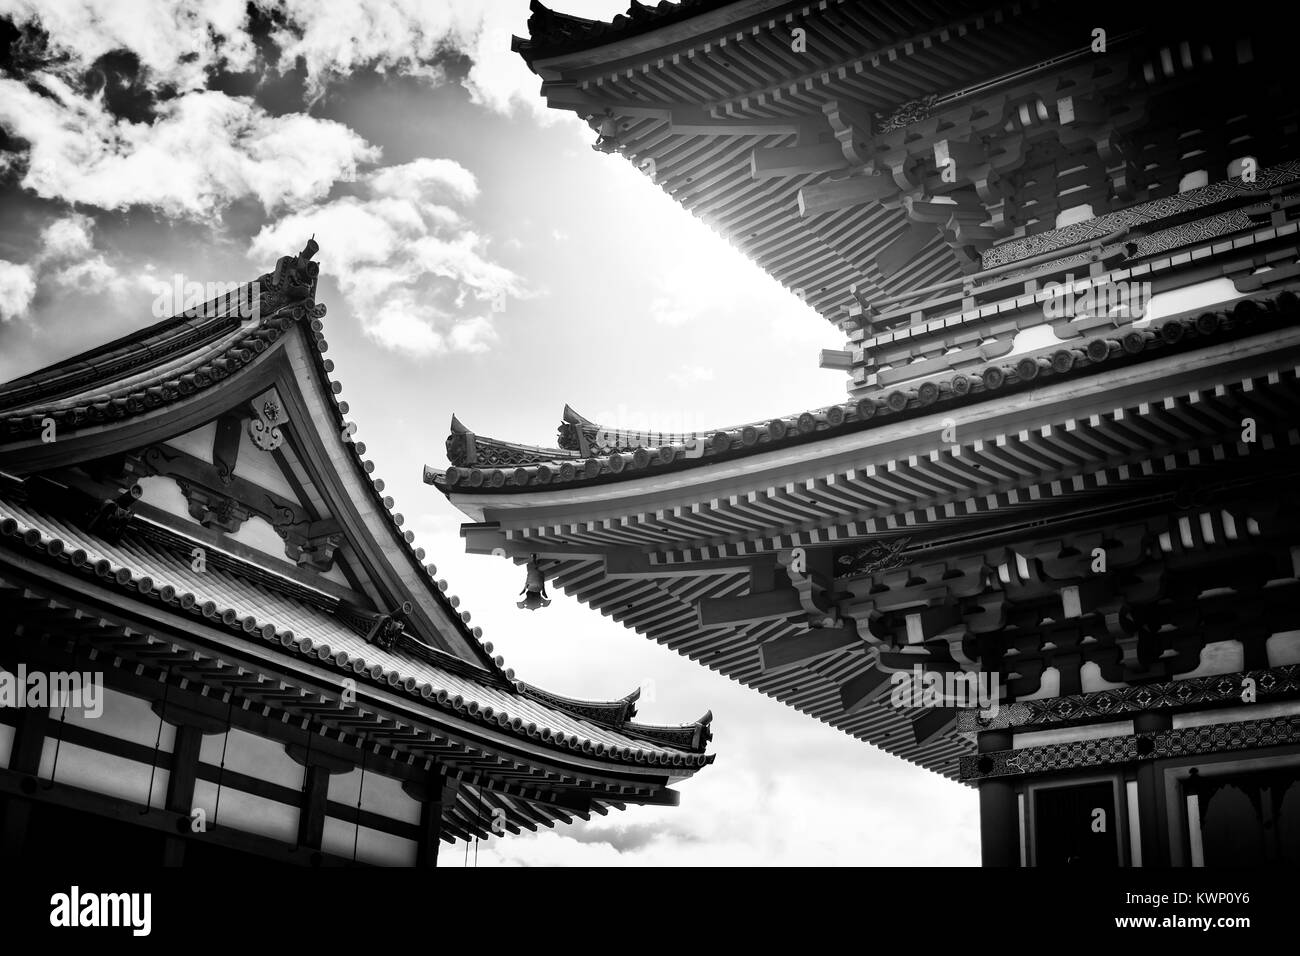 Détail architectural de la pagode Sanjunoto capacités au temple bouddhiste de Kiyomizu-dera à Kyoto au Japon en noir et blanc Banque D'Images